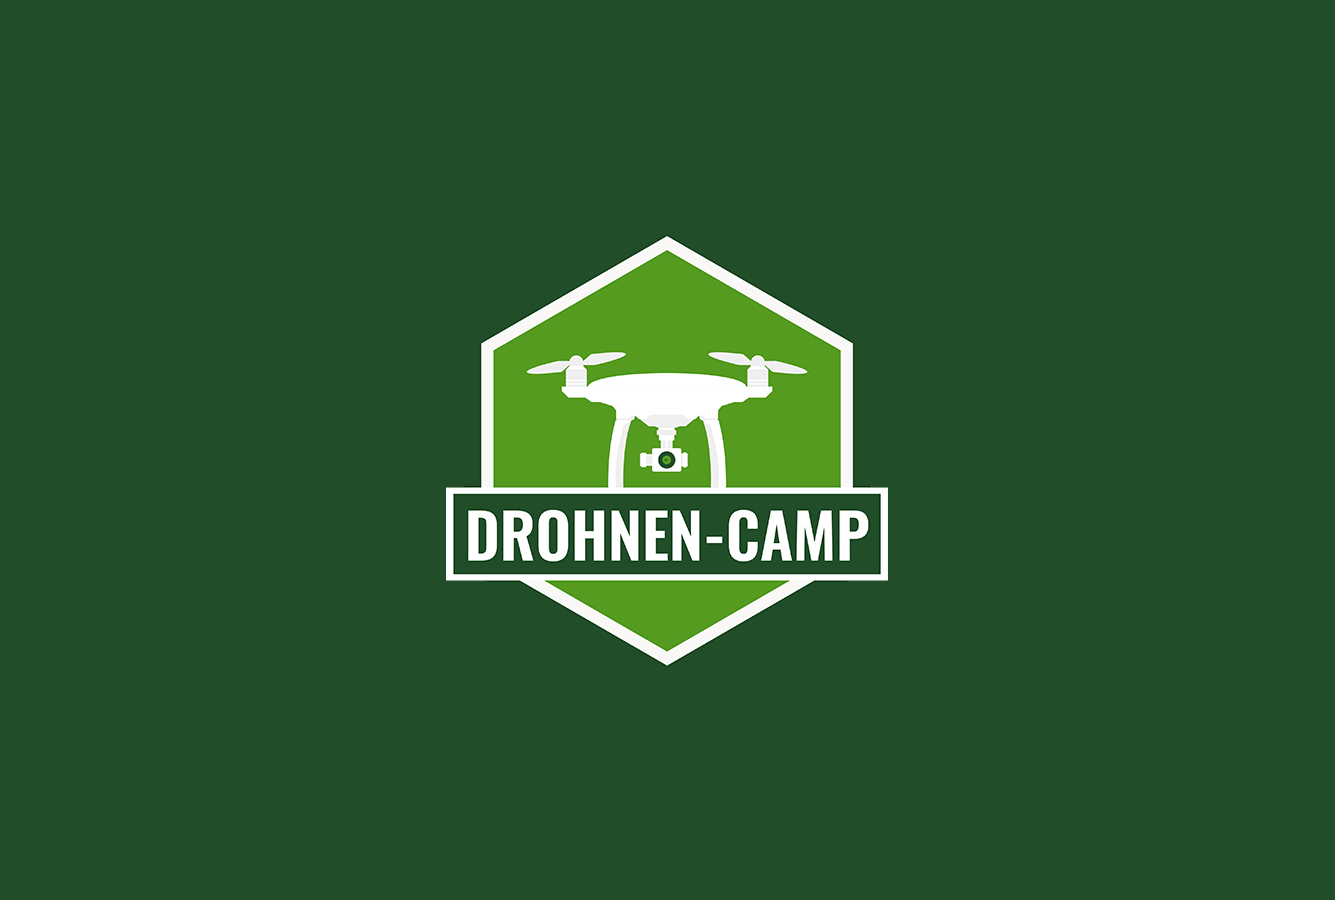 (c) Drohnen-camp.de